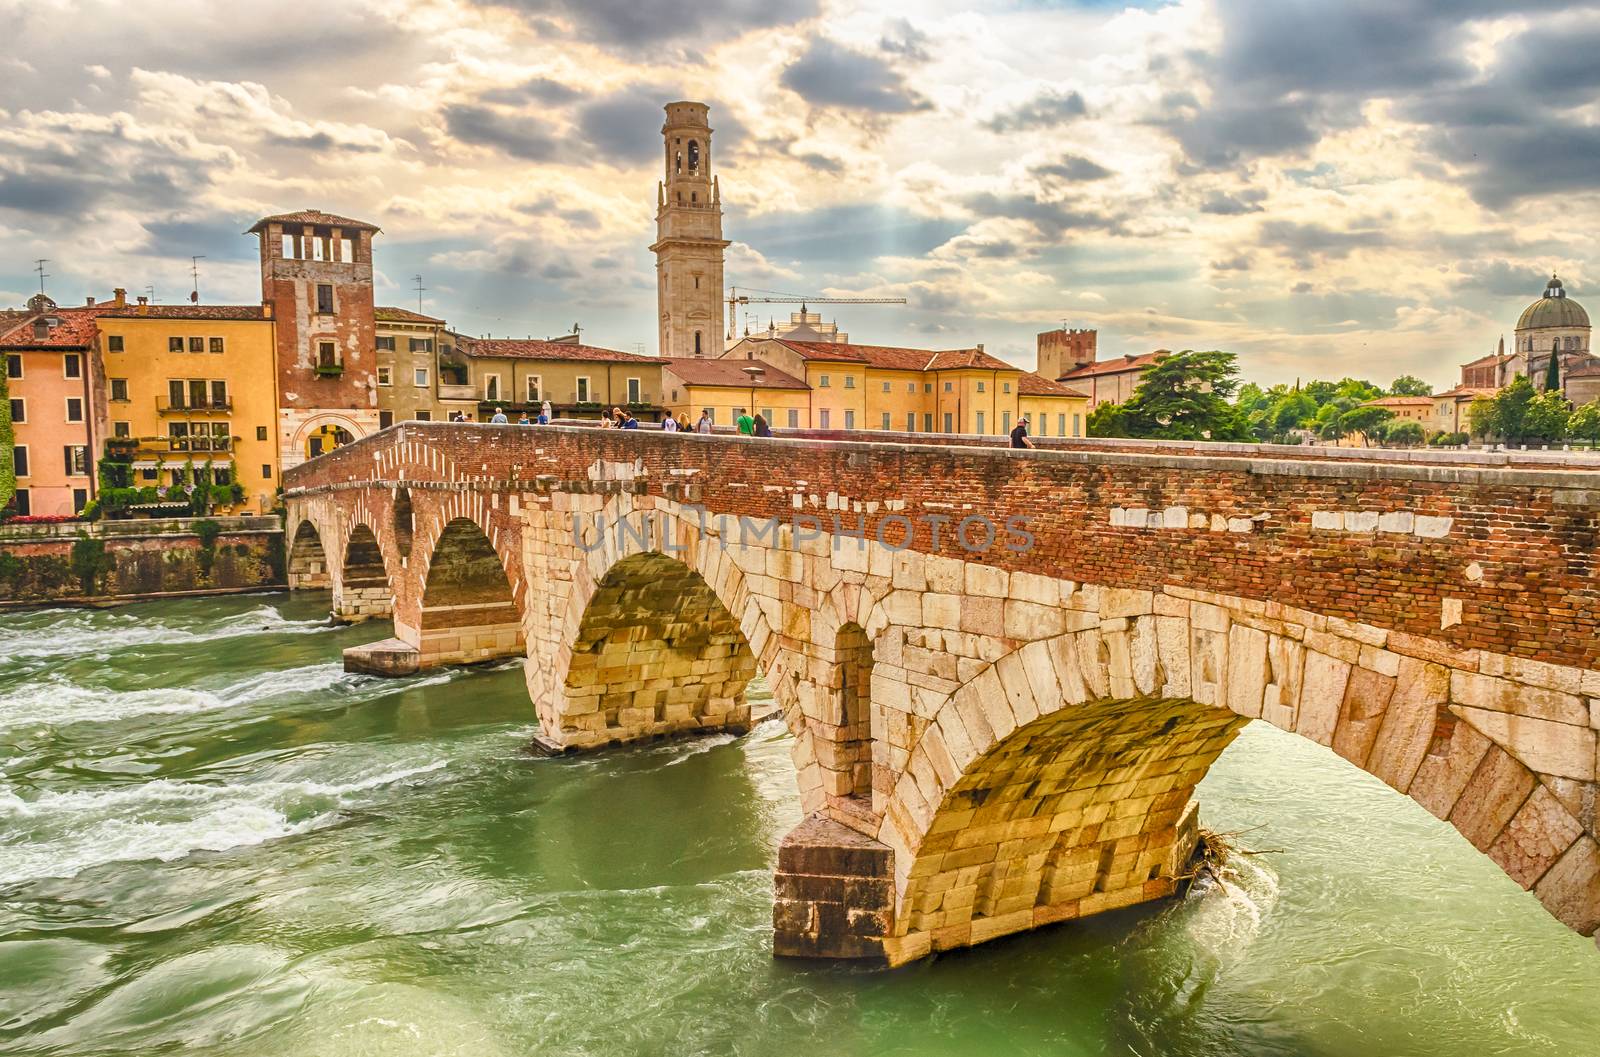 Ancient Roman Bridge called Ponte di Pietra in Verona by marcorubino